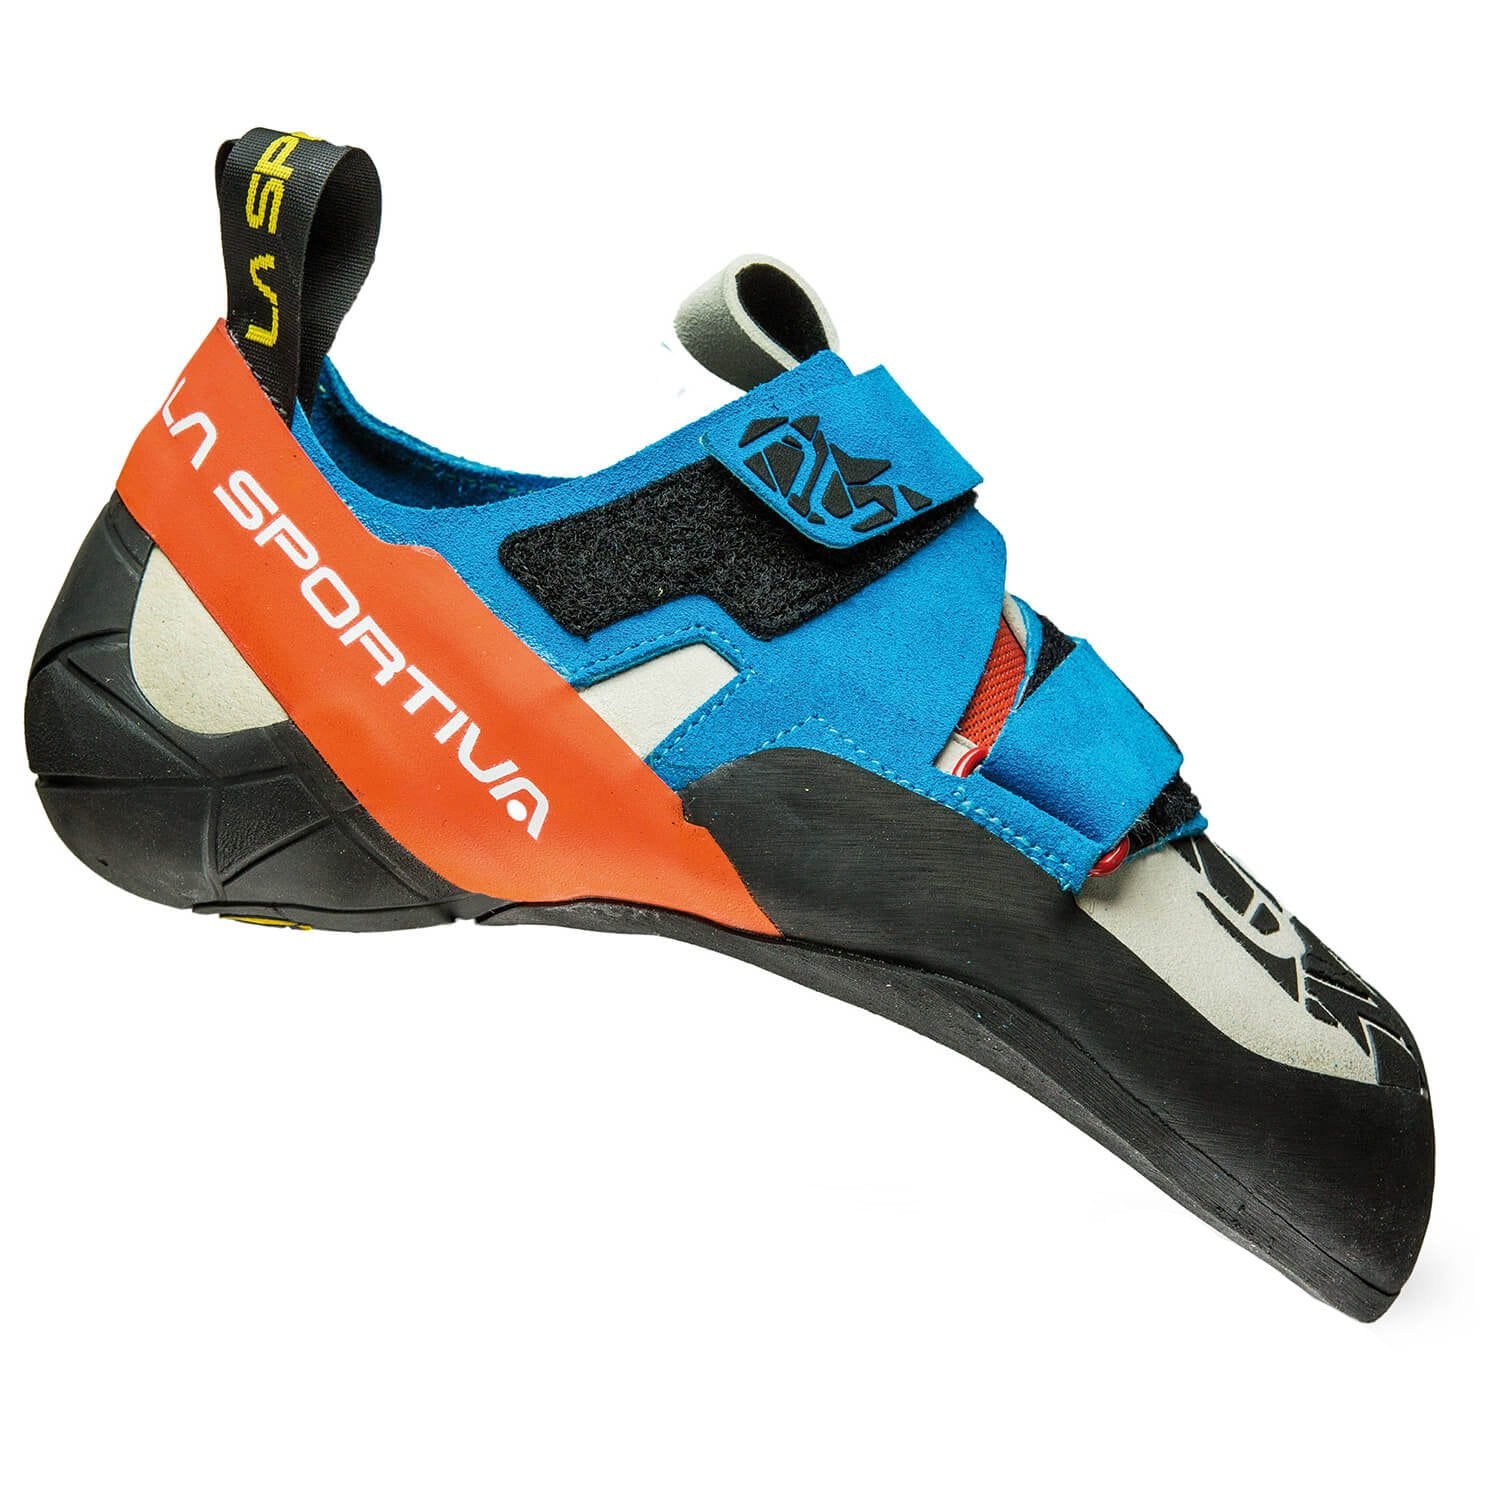 La Sportiva Otaki climbing shoe, in black, orange and blue colours